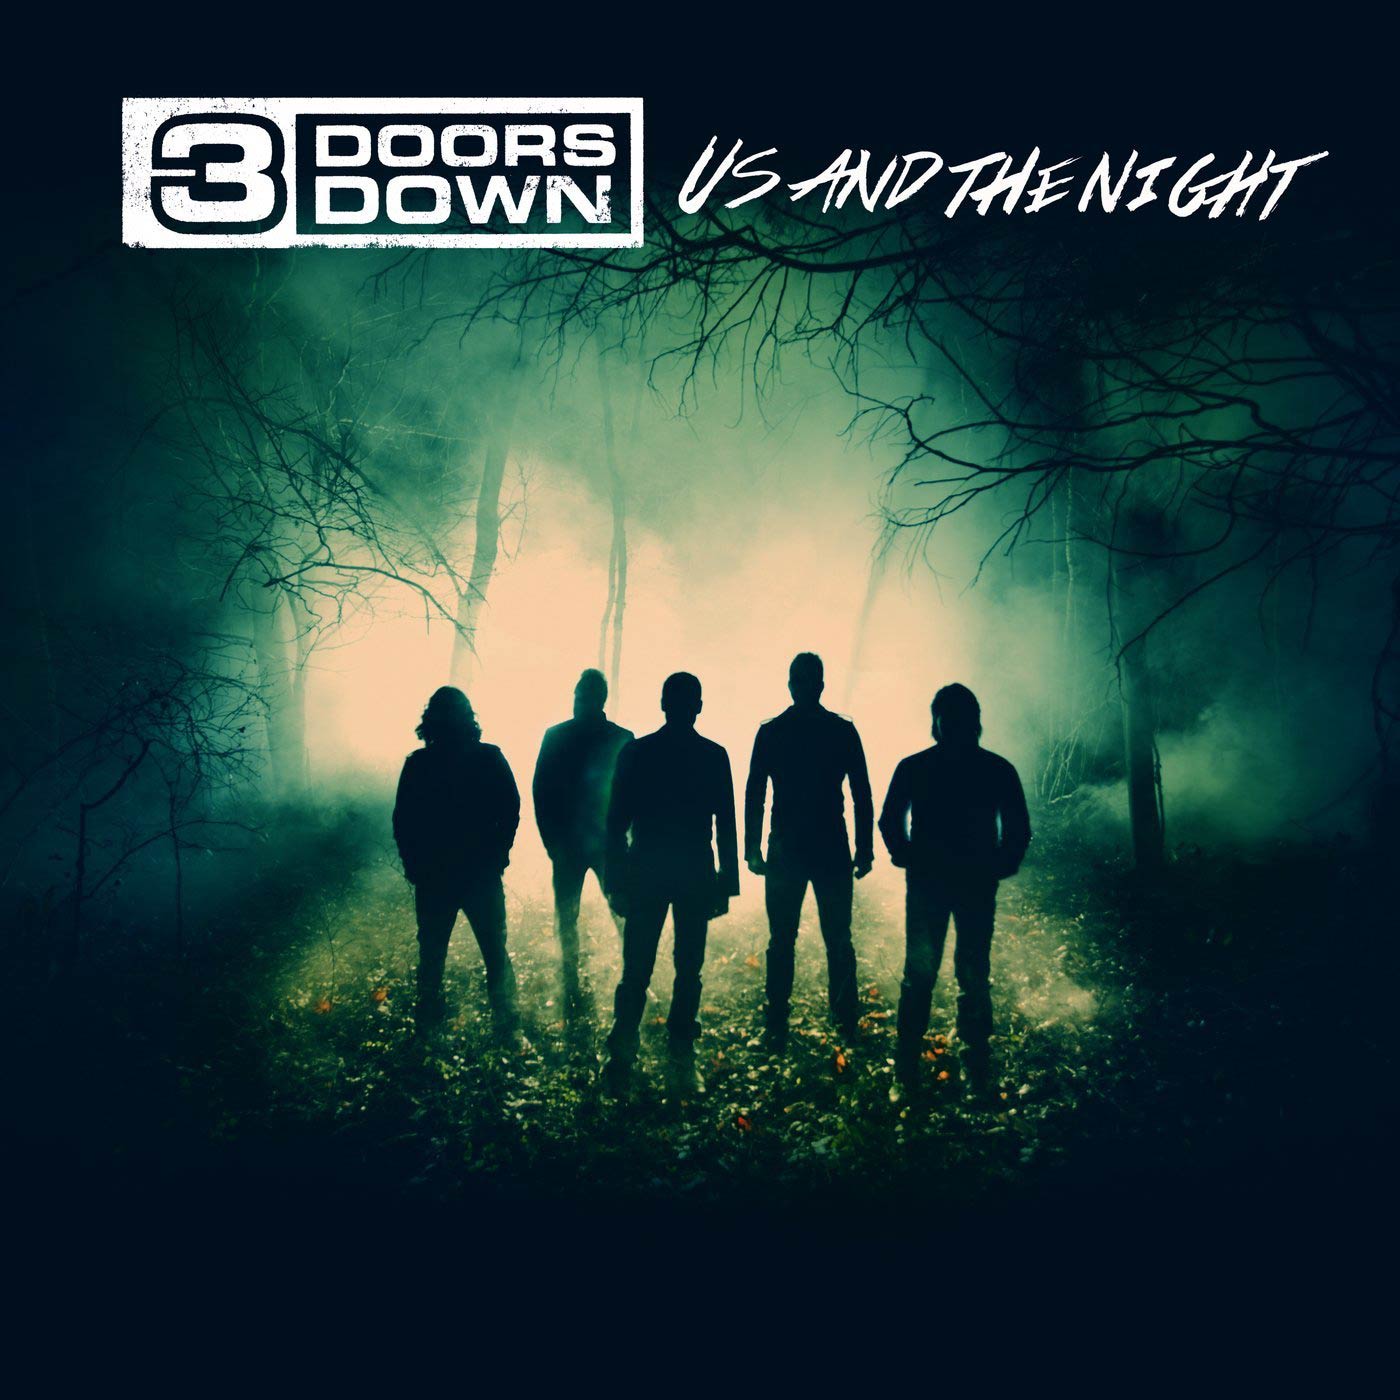 3 Doors Down: Us and the night, la portada del disco